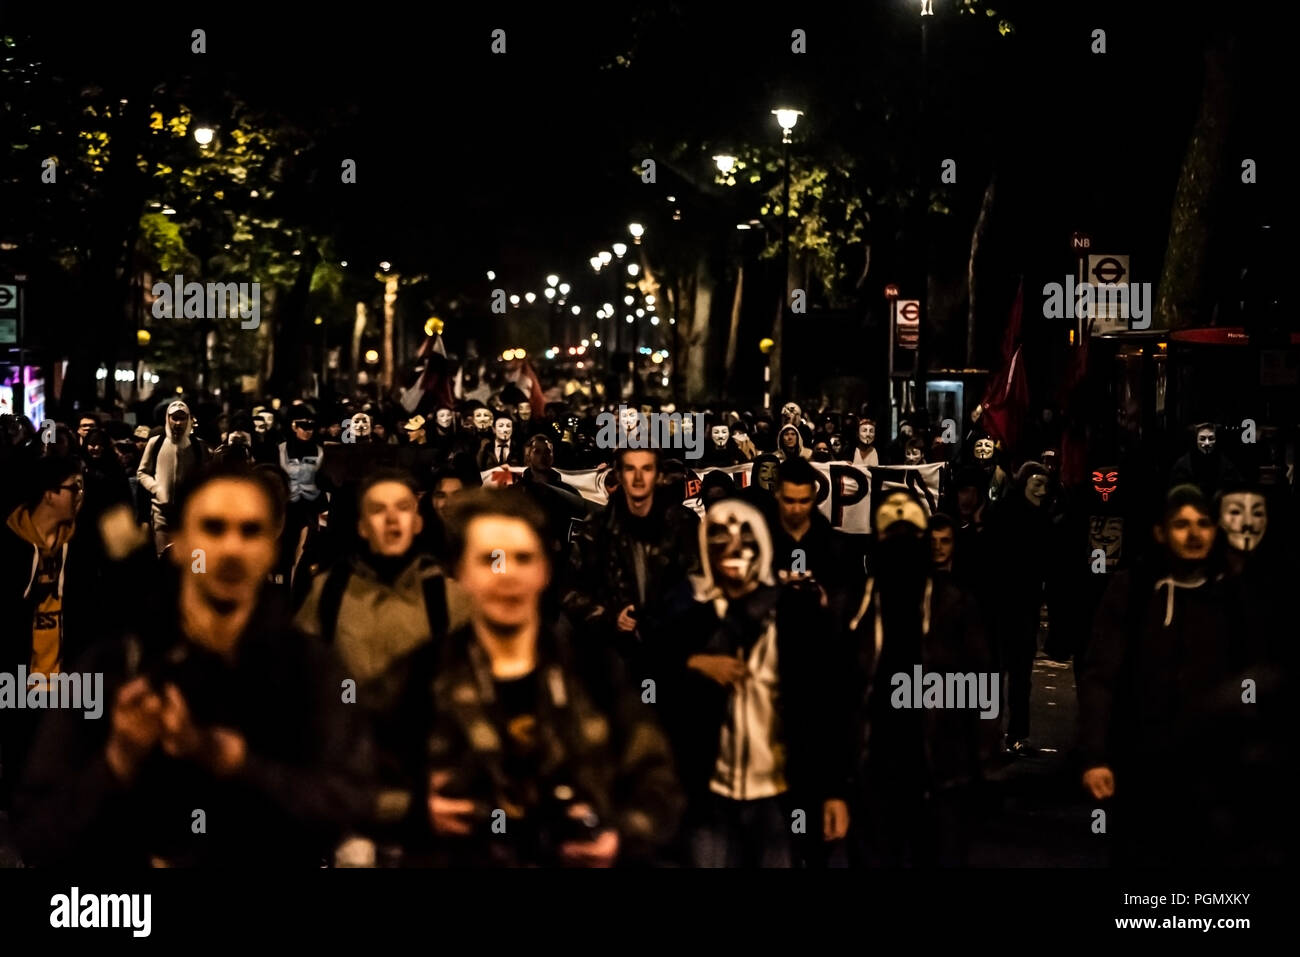 Masque de millions pour les sans-voix anonyme Mars manifestation de protestation à travers Londres sur la nuit de Guy Fawkes, le 5 novembre. Des foules de manifestants masqués Banque D'Images